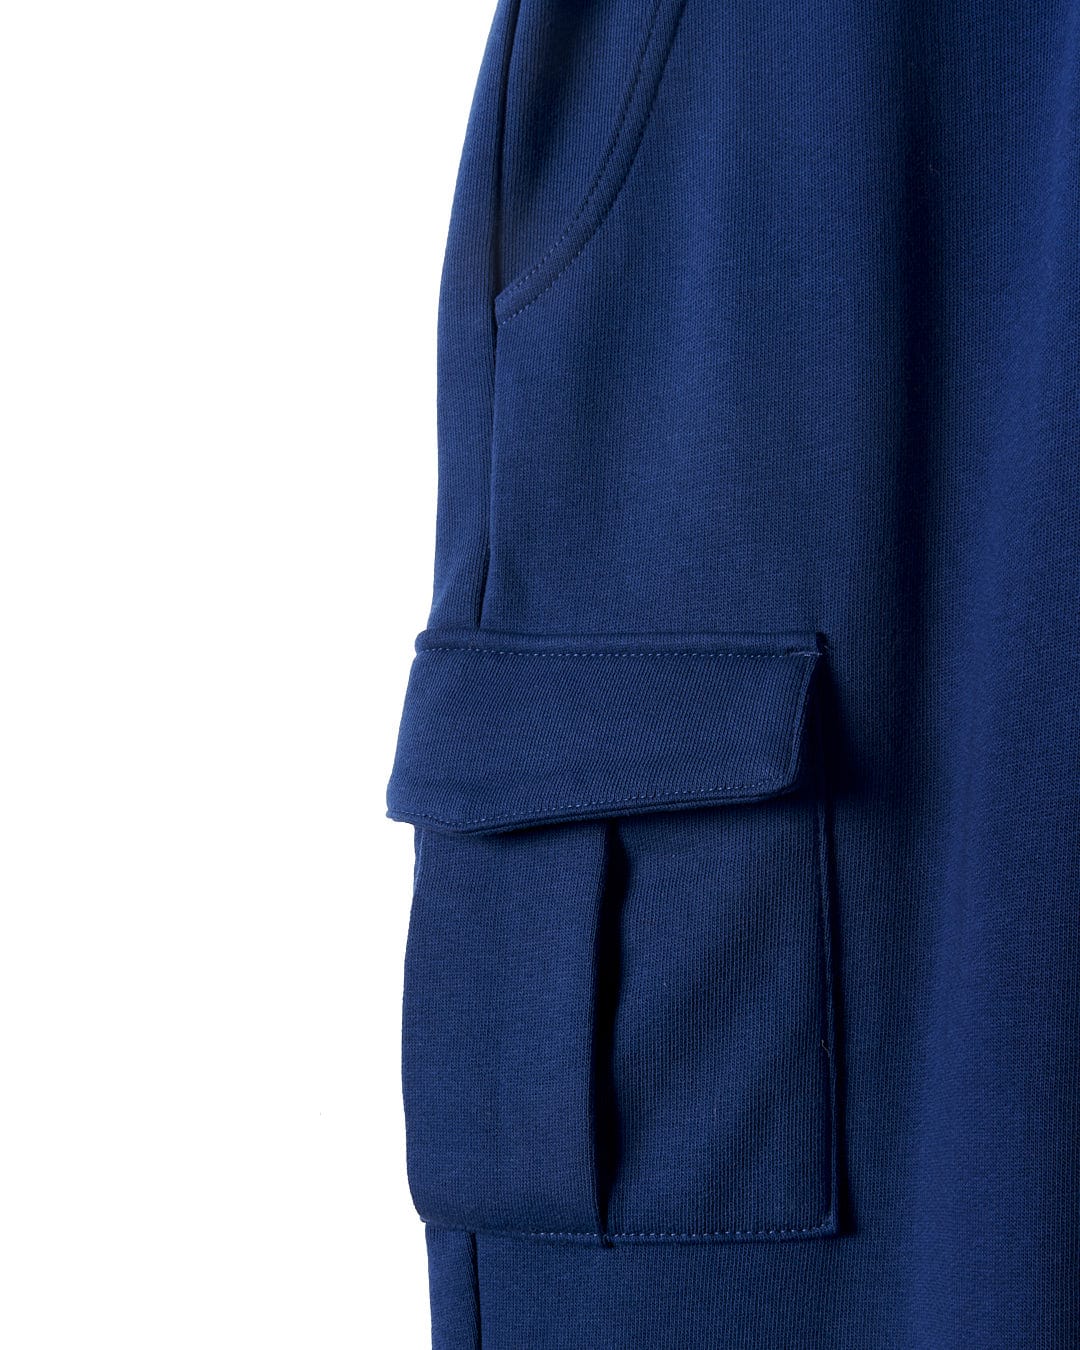 The back pocket of a Jakub - Kids Cargo Trouser - Blue by Saltrock.